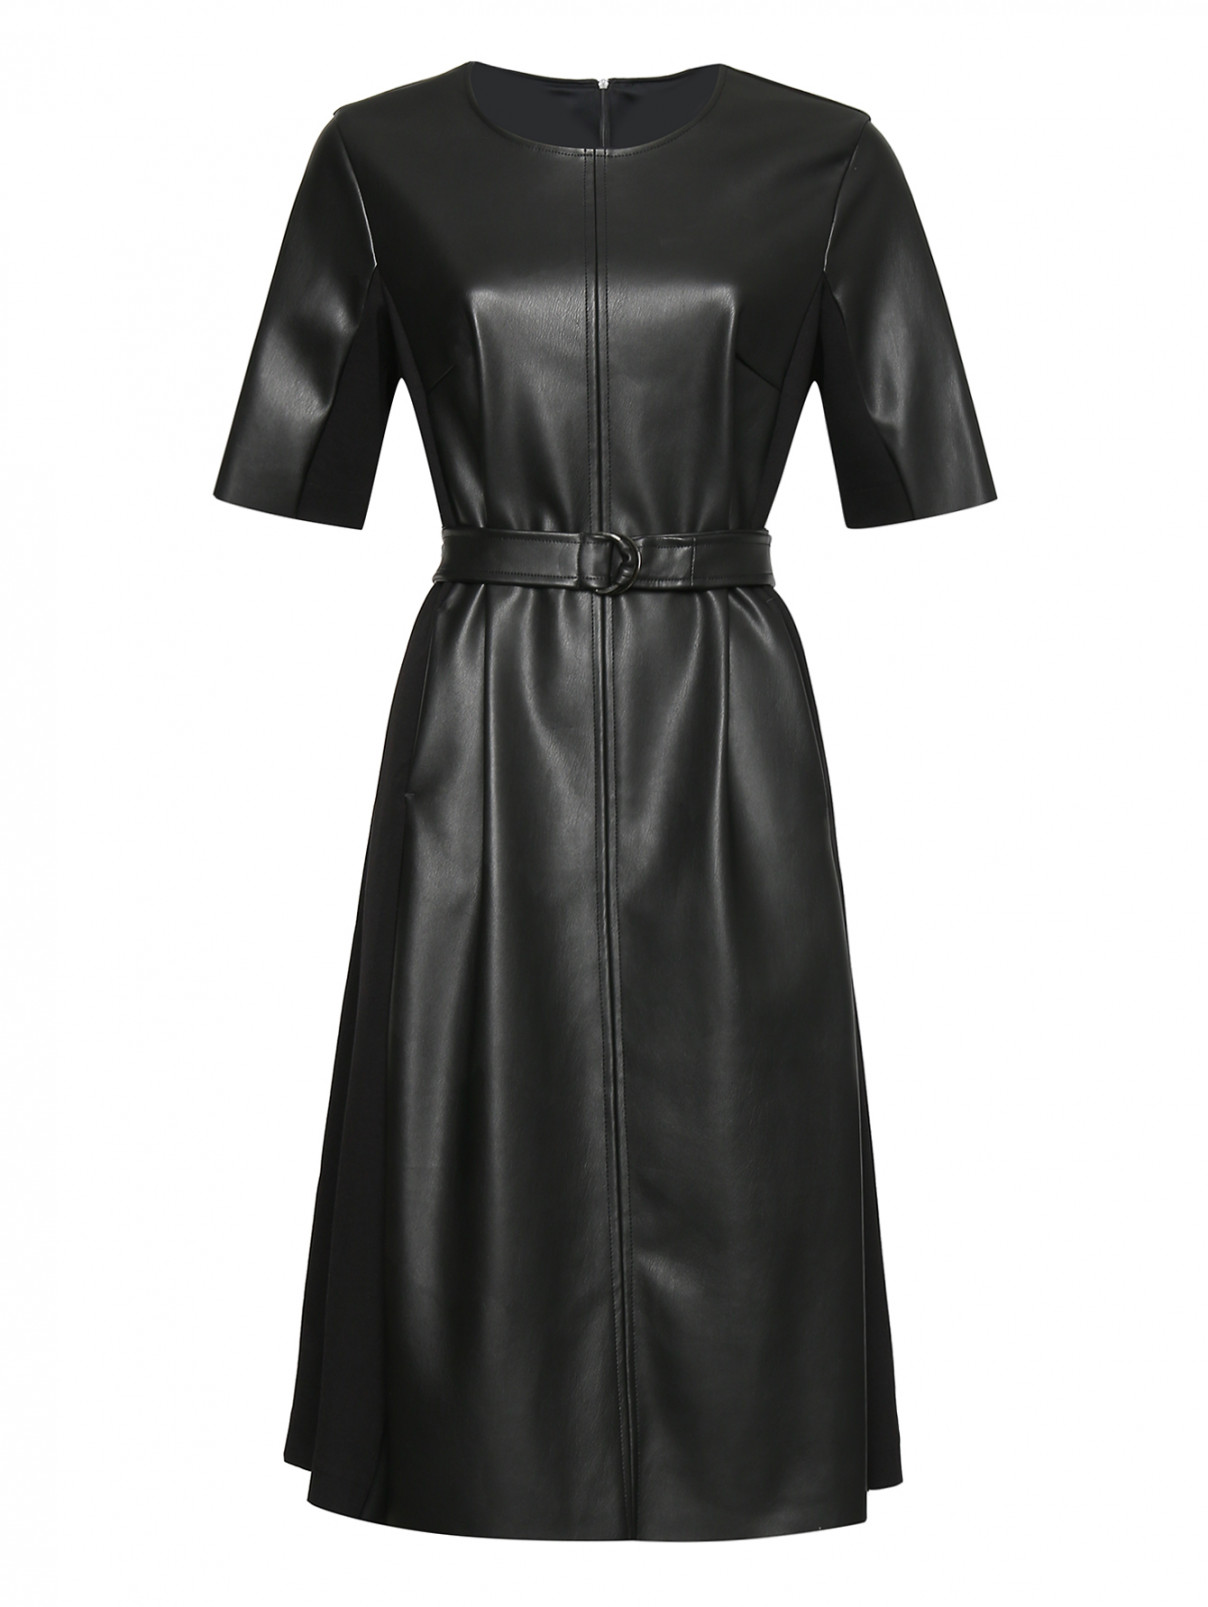 Комбинированное платье из эко-кожи с поясом Persona by Marina Rinaldi  –  Общий вид  – Цвет:  Черный